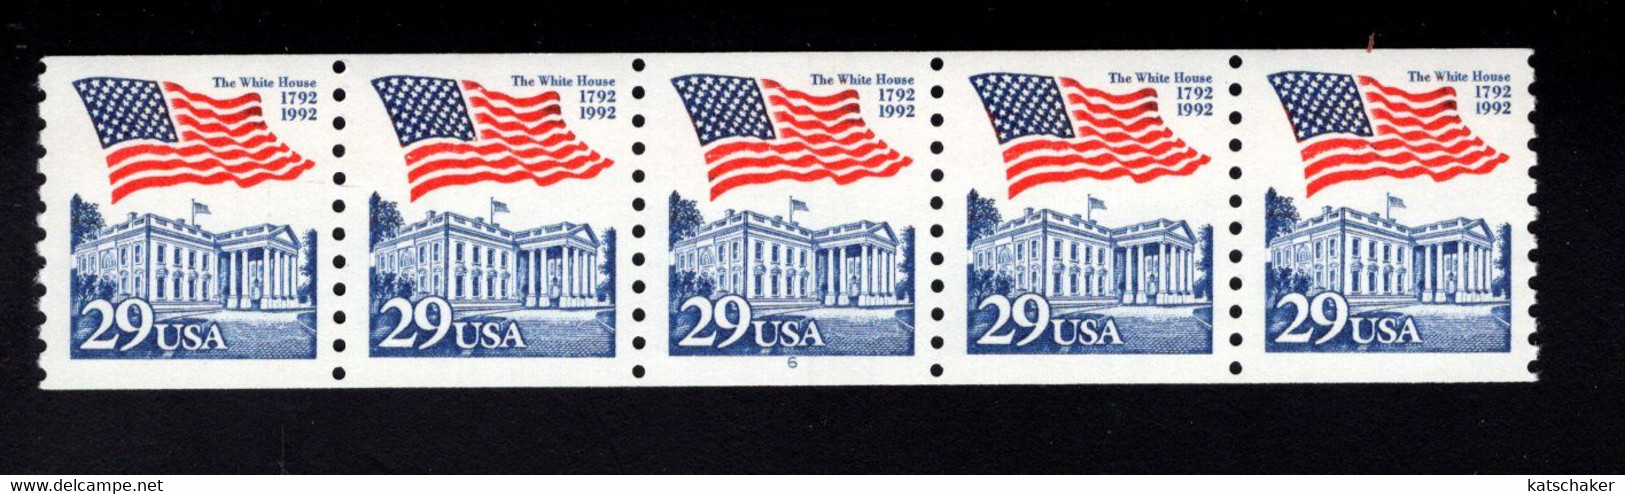 310987769 1992 (XX) SCOTT 2609 PCN 6 POSTFRIS MINT NEVER HINGED - FLAG OVER WHITE HOUSE - Rollenmarken (Plattennummern)